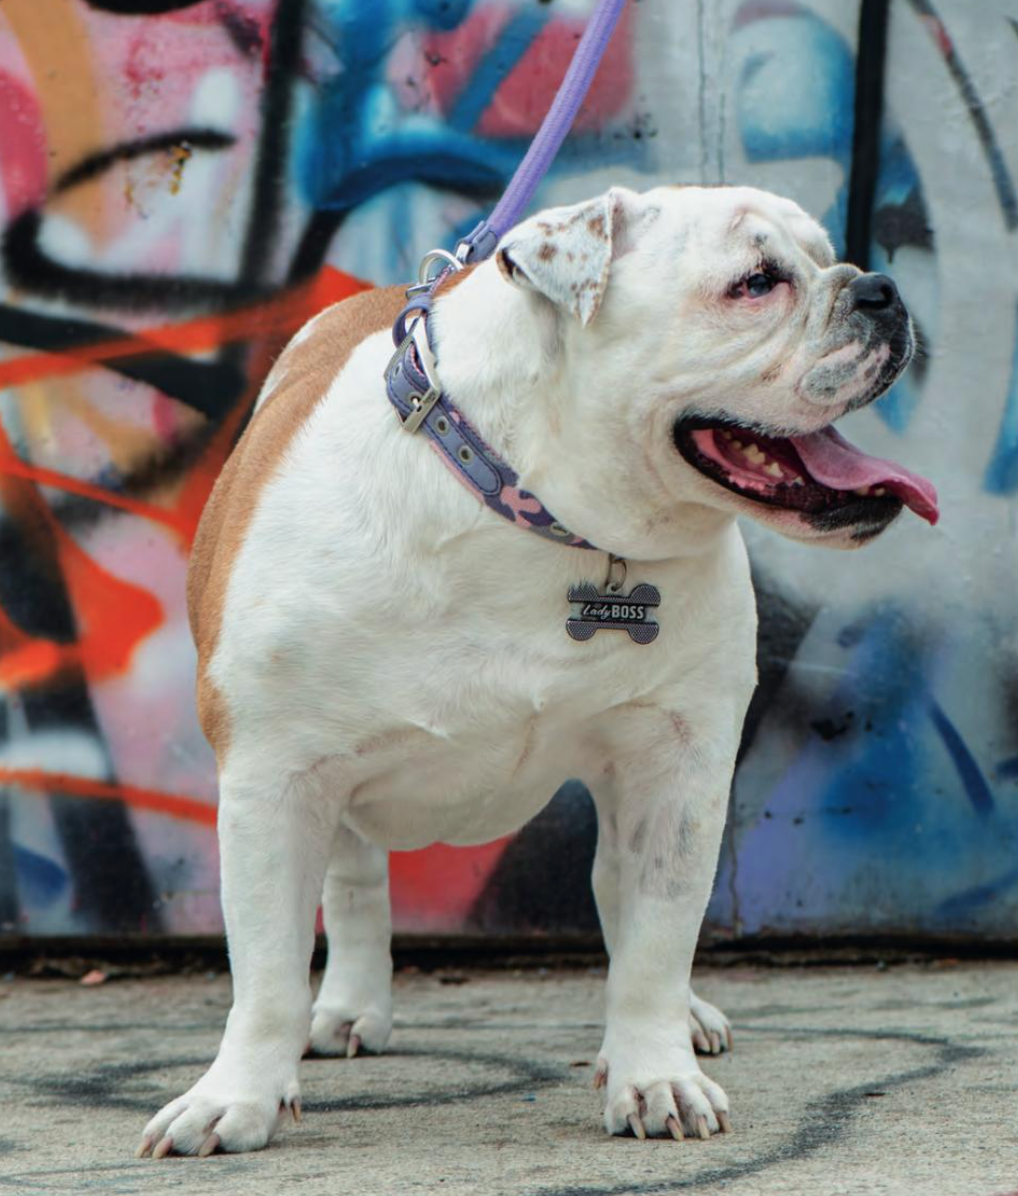 Placa ID Bronx Lady Boss Grande en Forma de Hueso para Perros